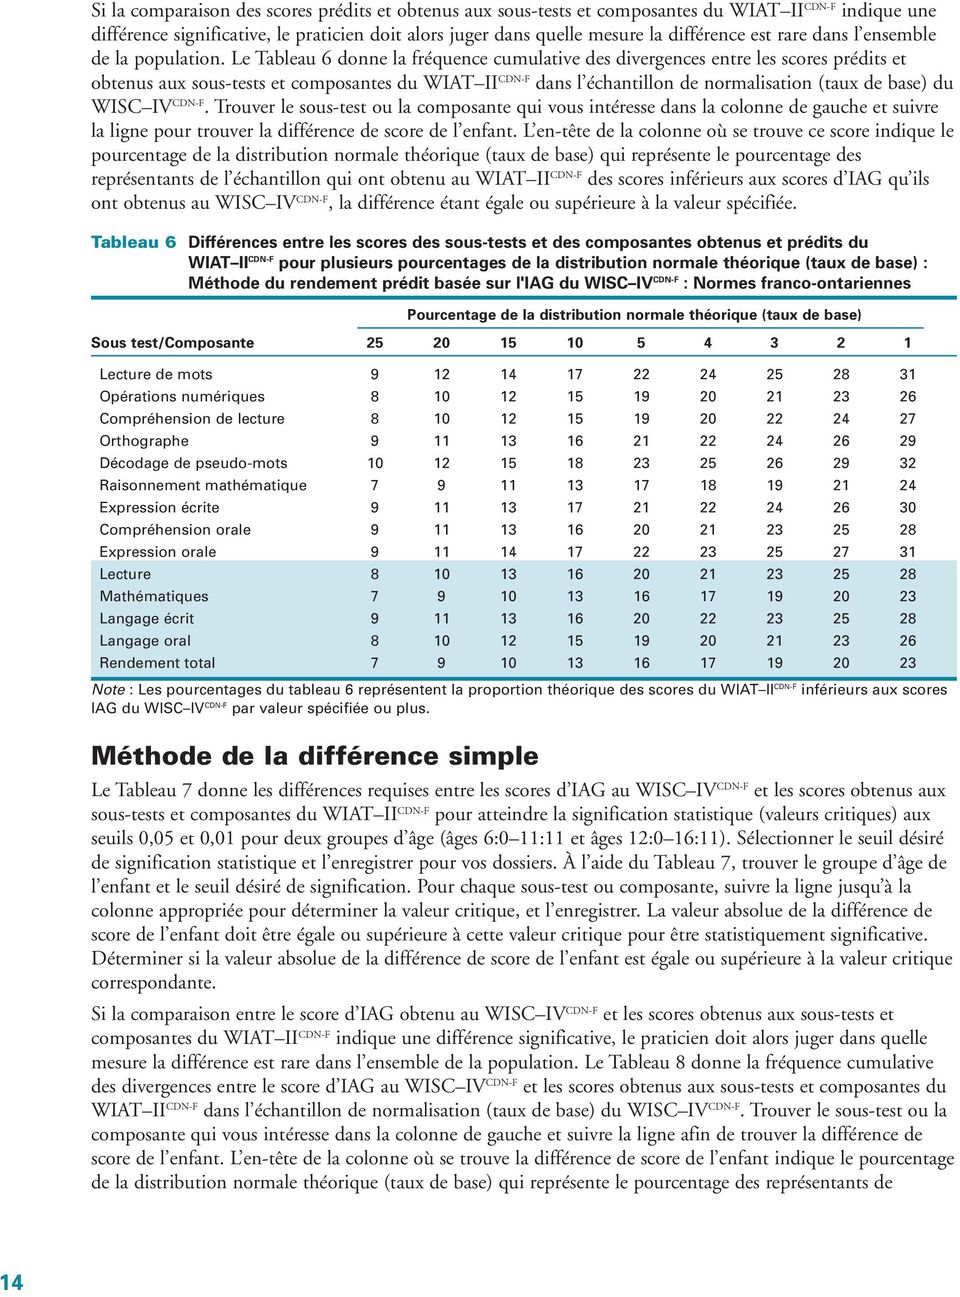 Le Tableau 6 donne la fréquence cumulative des divergences entre les scores prédits et obtenus aux sous-tests et composantes du WIAT II CDN-F dans l échantillon de normalisation (taux de base) du